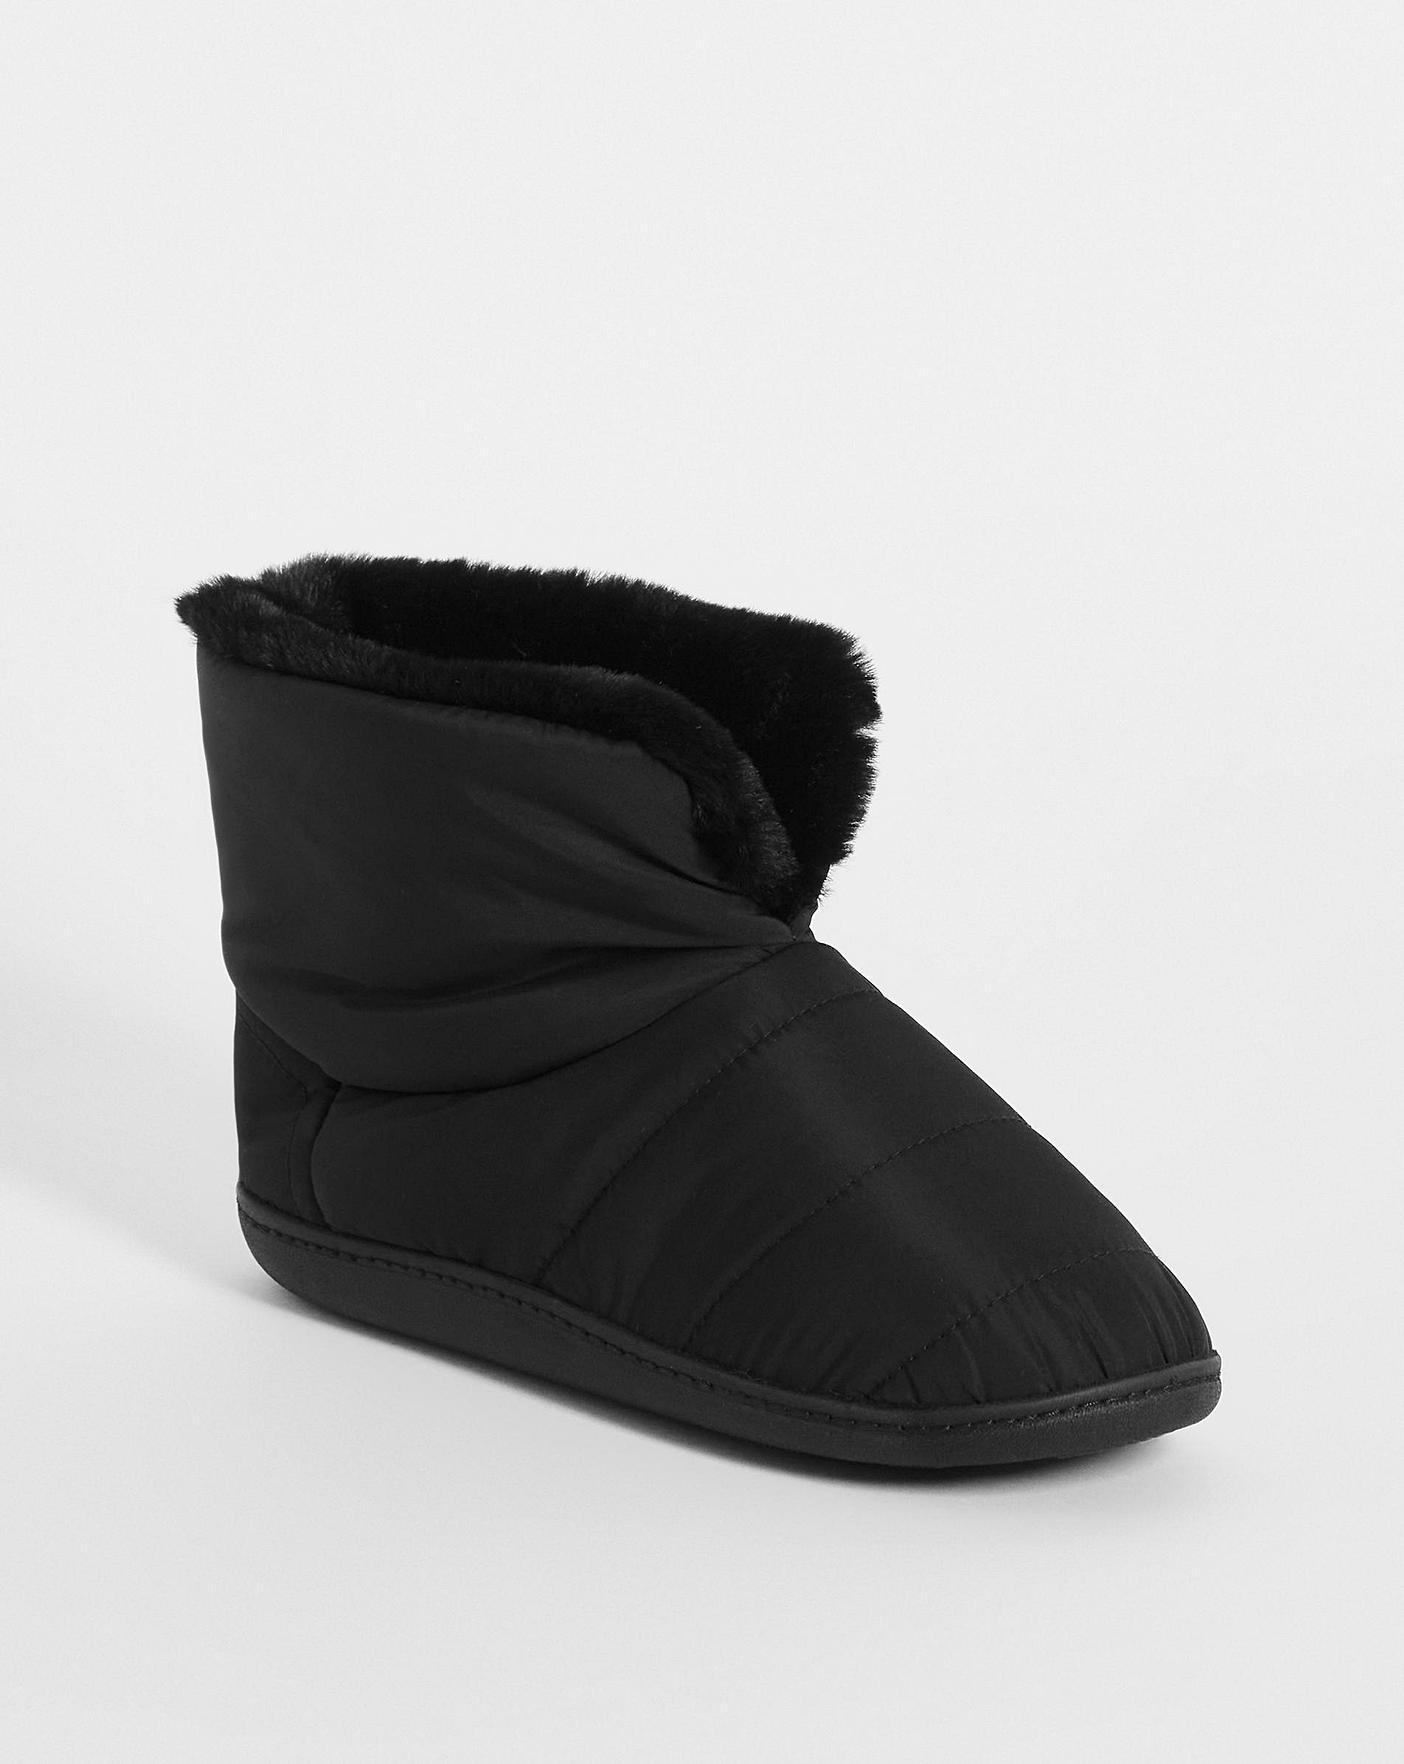 Boot Slipper E Fit | Fashion World